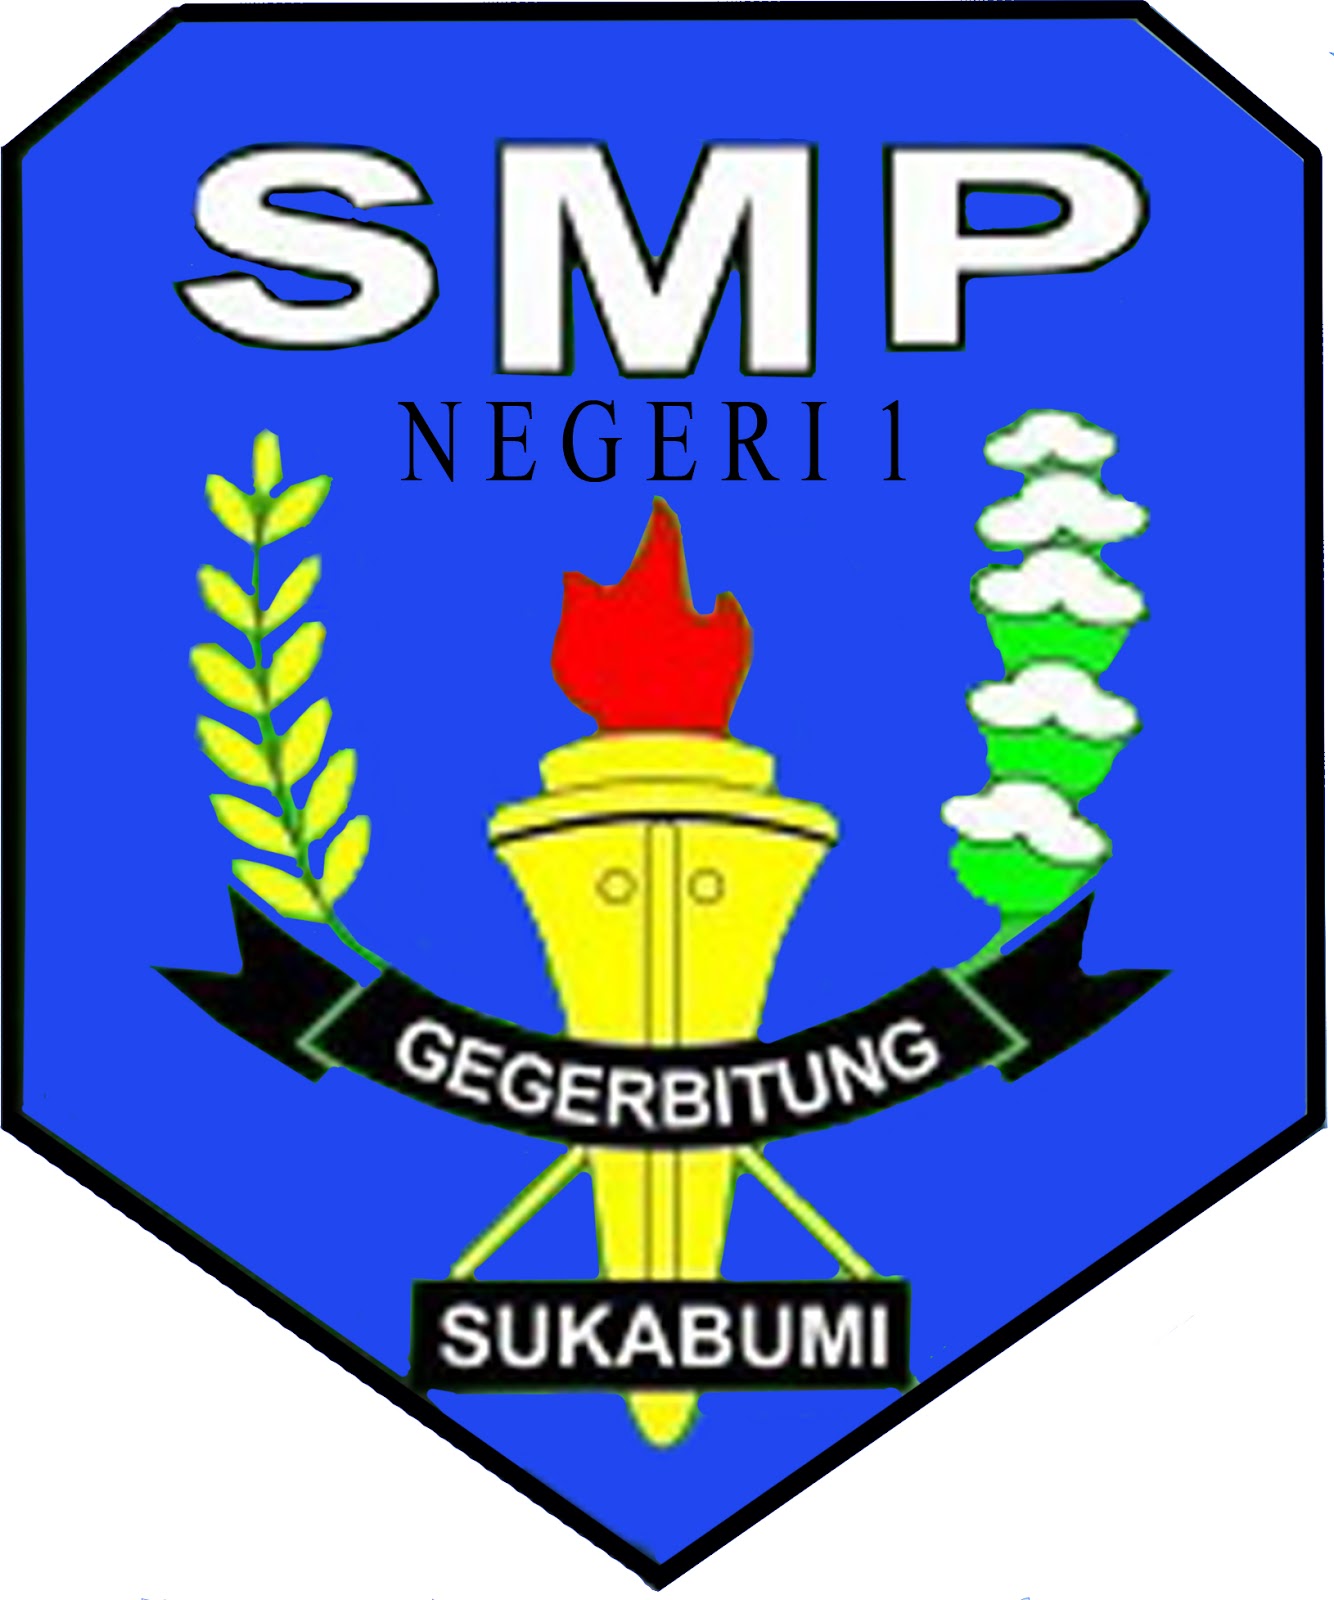 Logo Baru SMPN 1 Gegerbitung ~ SMPN 1 Gegerbitung